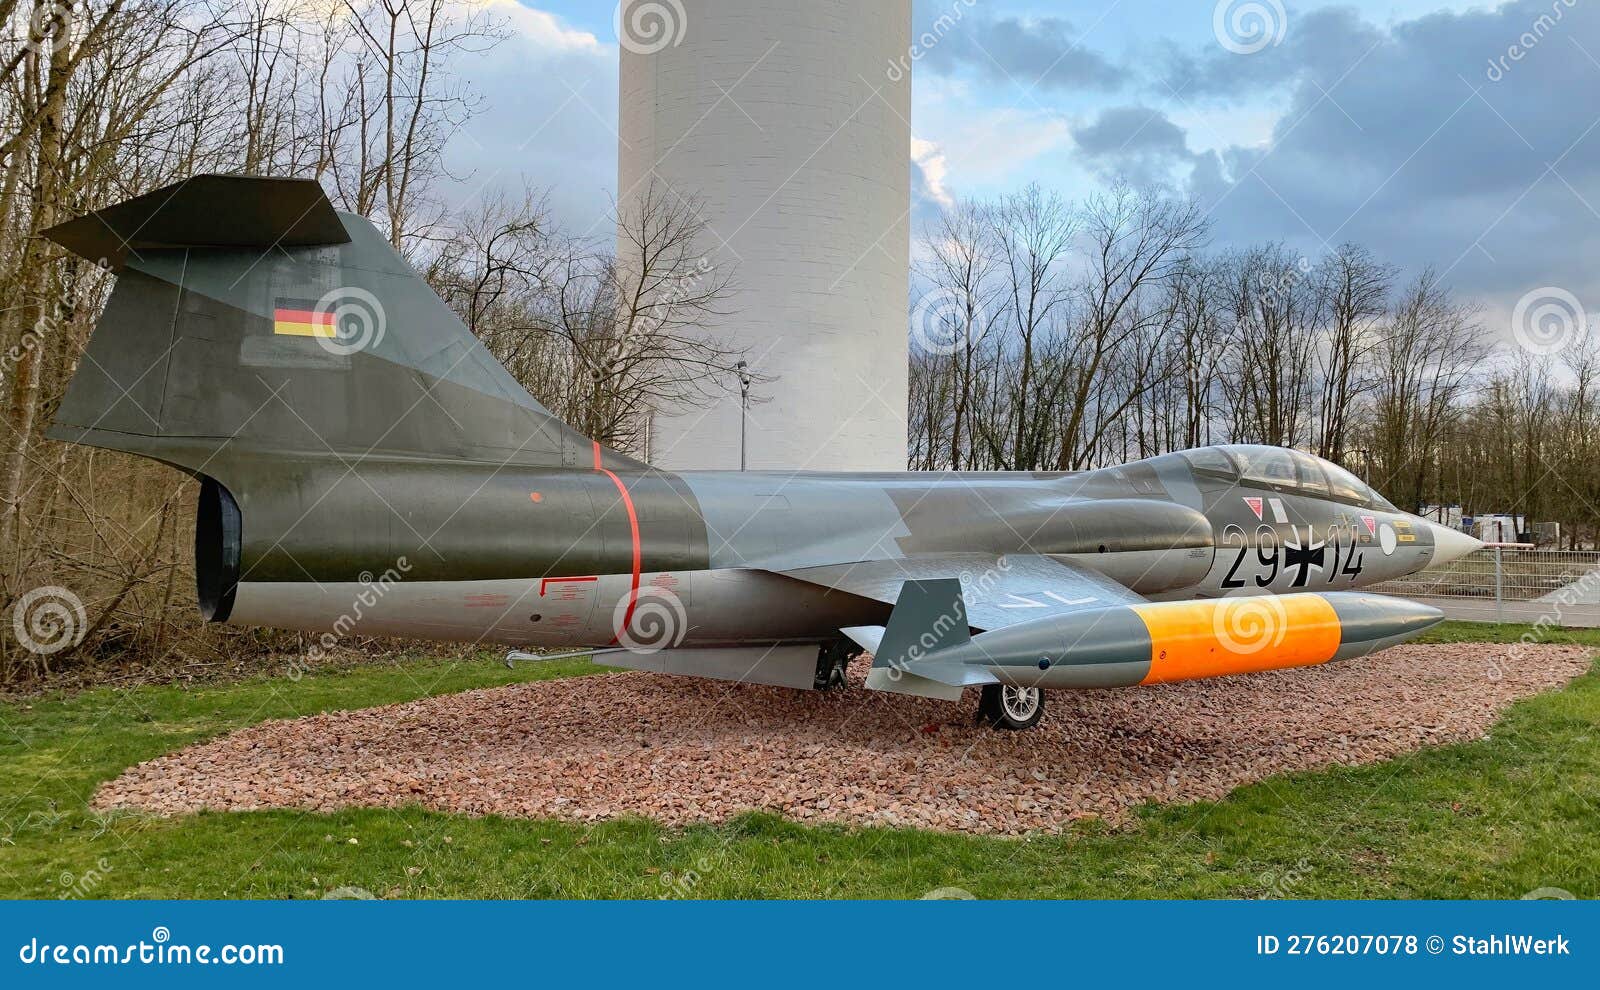 starfighter bundeswehr germany fighter jet